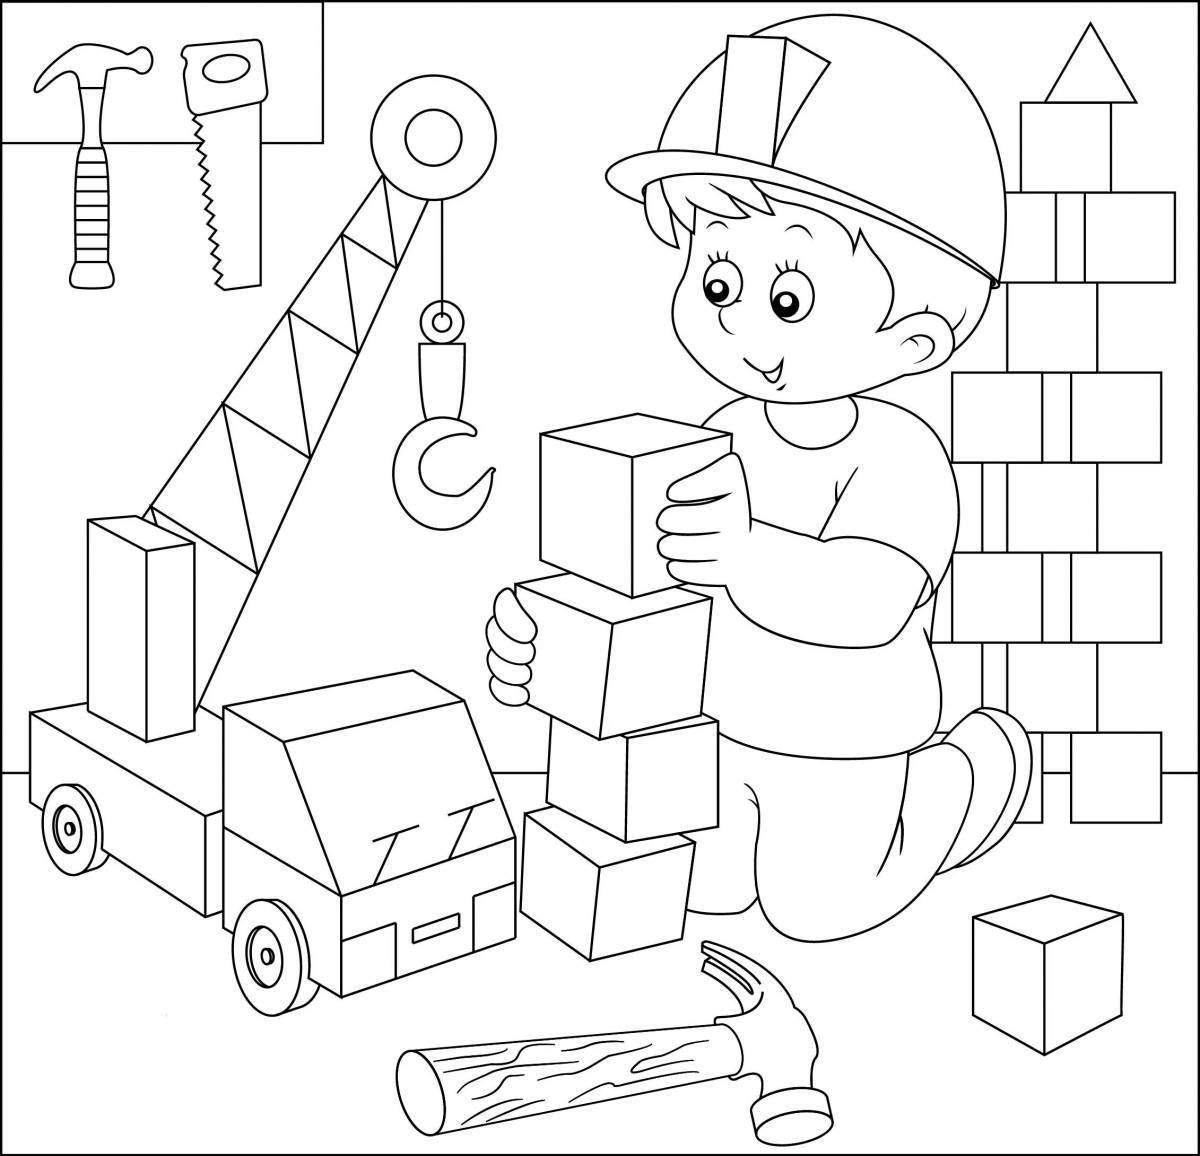 Игривая страница раскраски строителя для детей